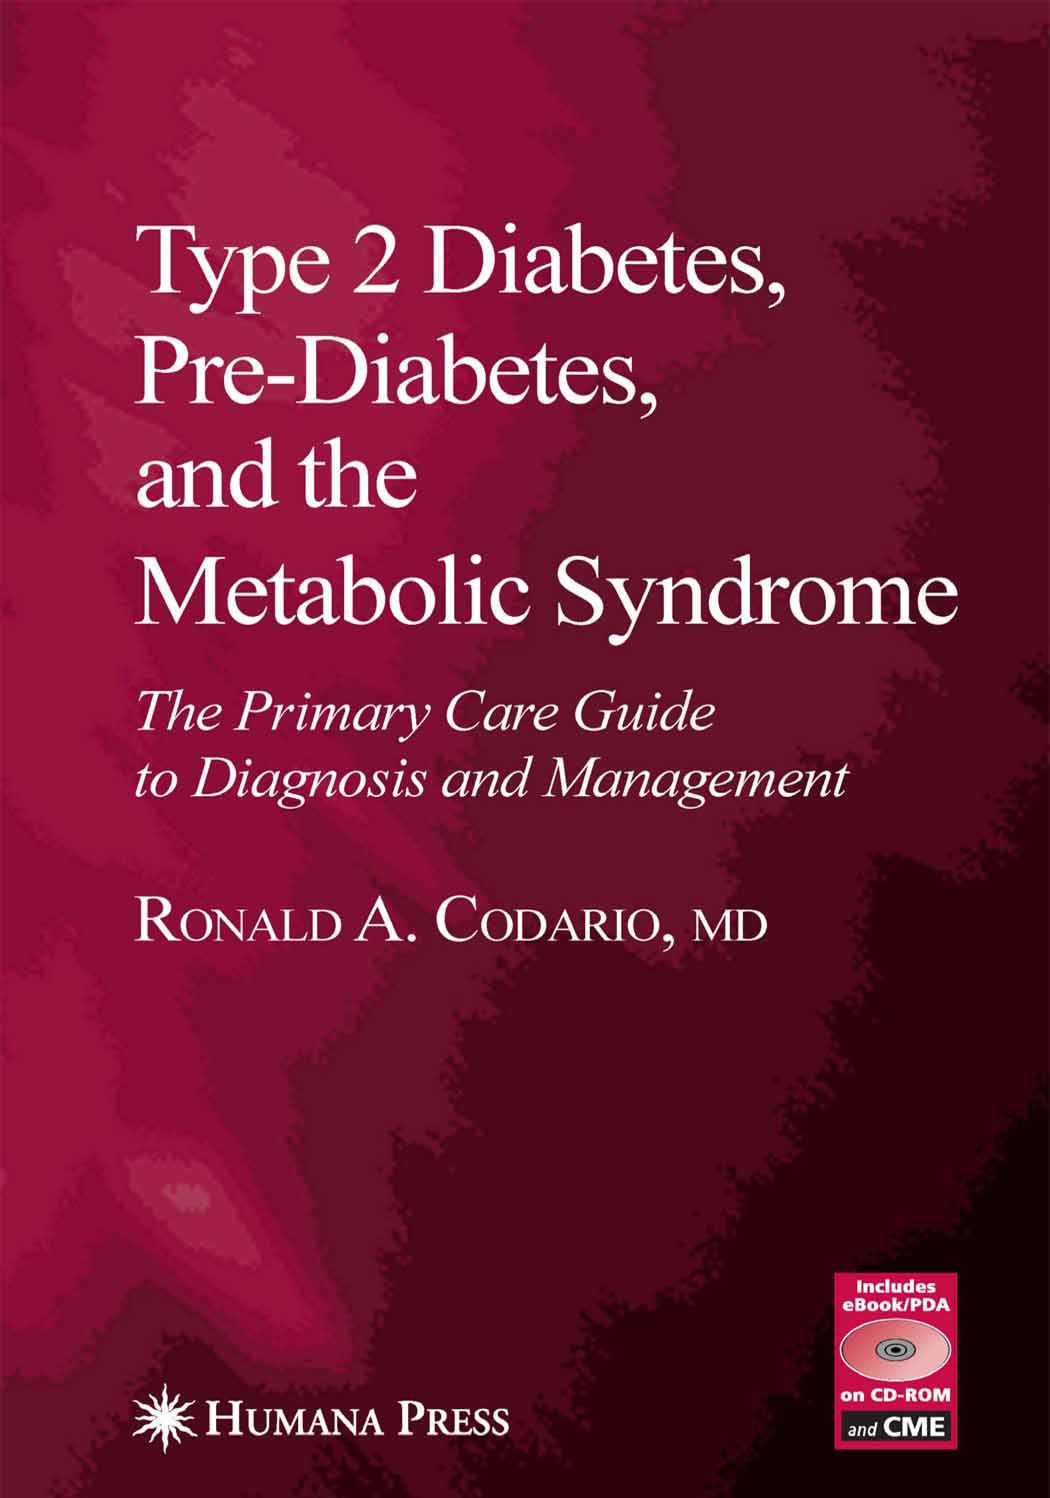 Type 2 Diabetes, Pre-Diabetes, and the Metabolic Syndrome